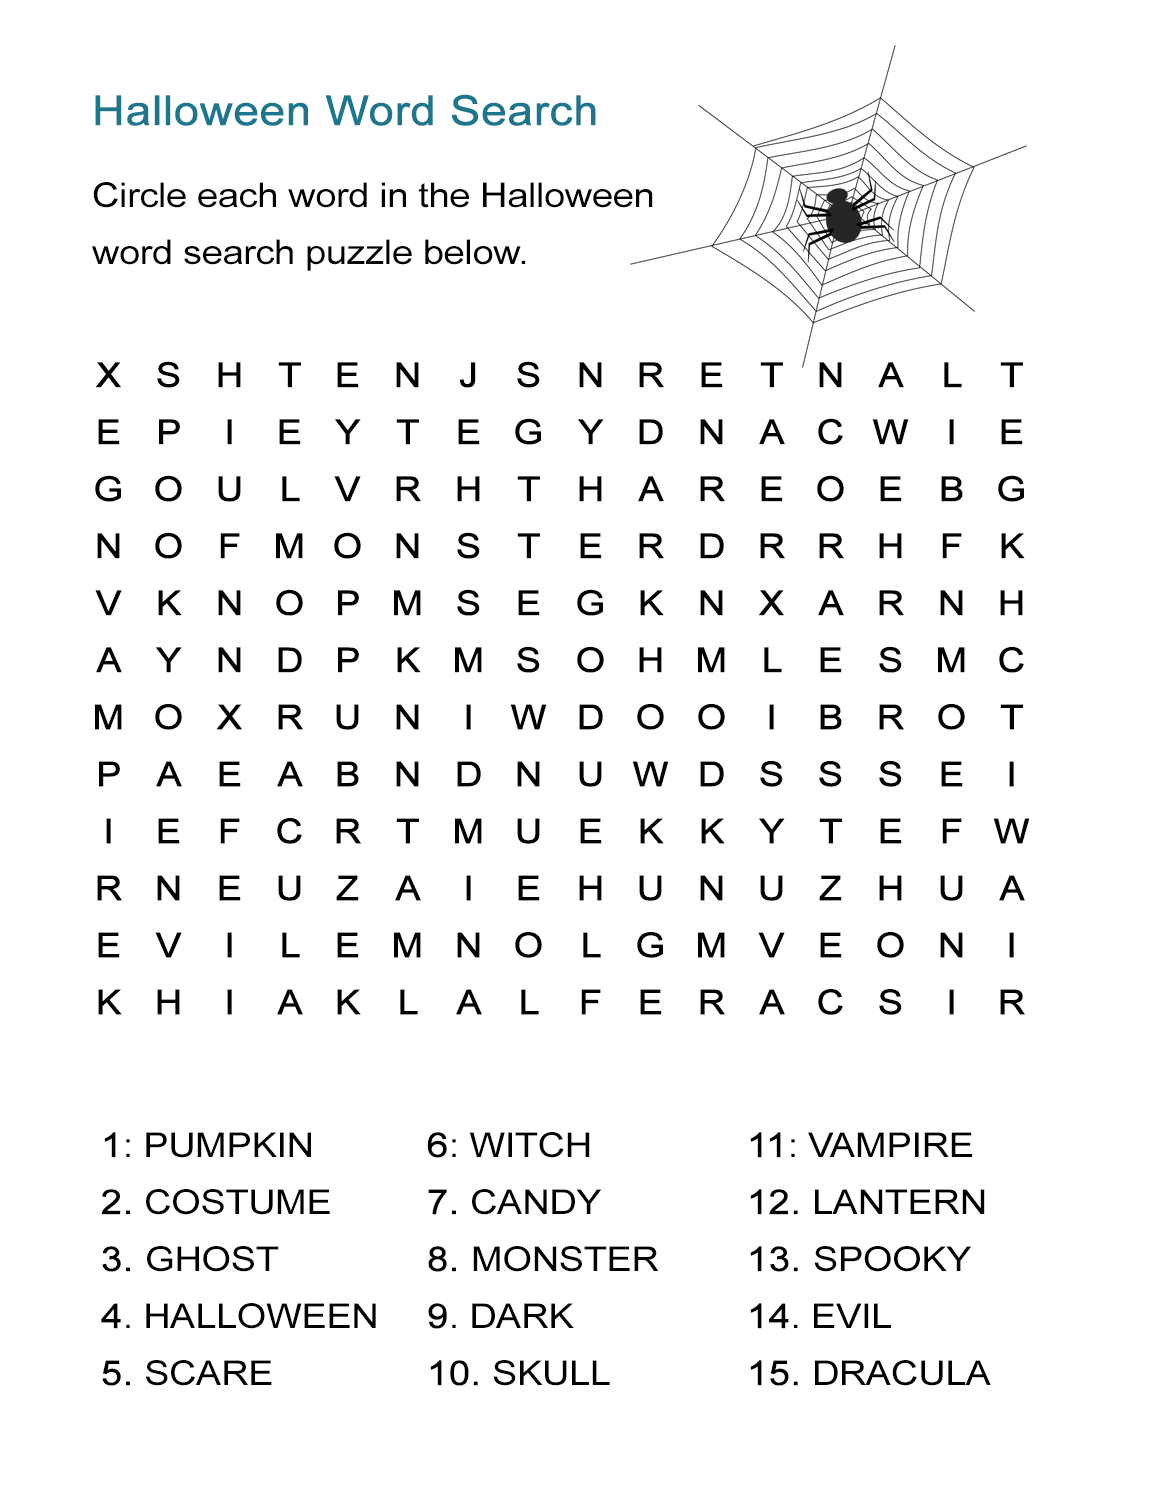 Frankenstein Worksheets For Kids Free Printable Halloween Word Halloween Puzzle Printable 